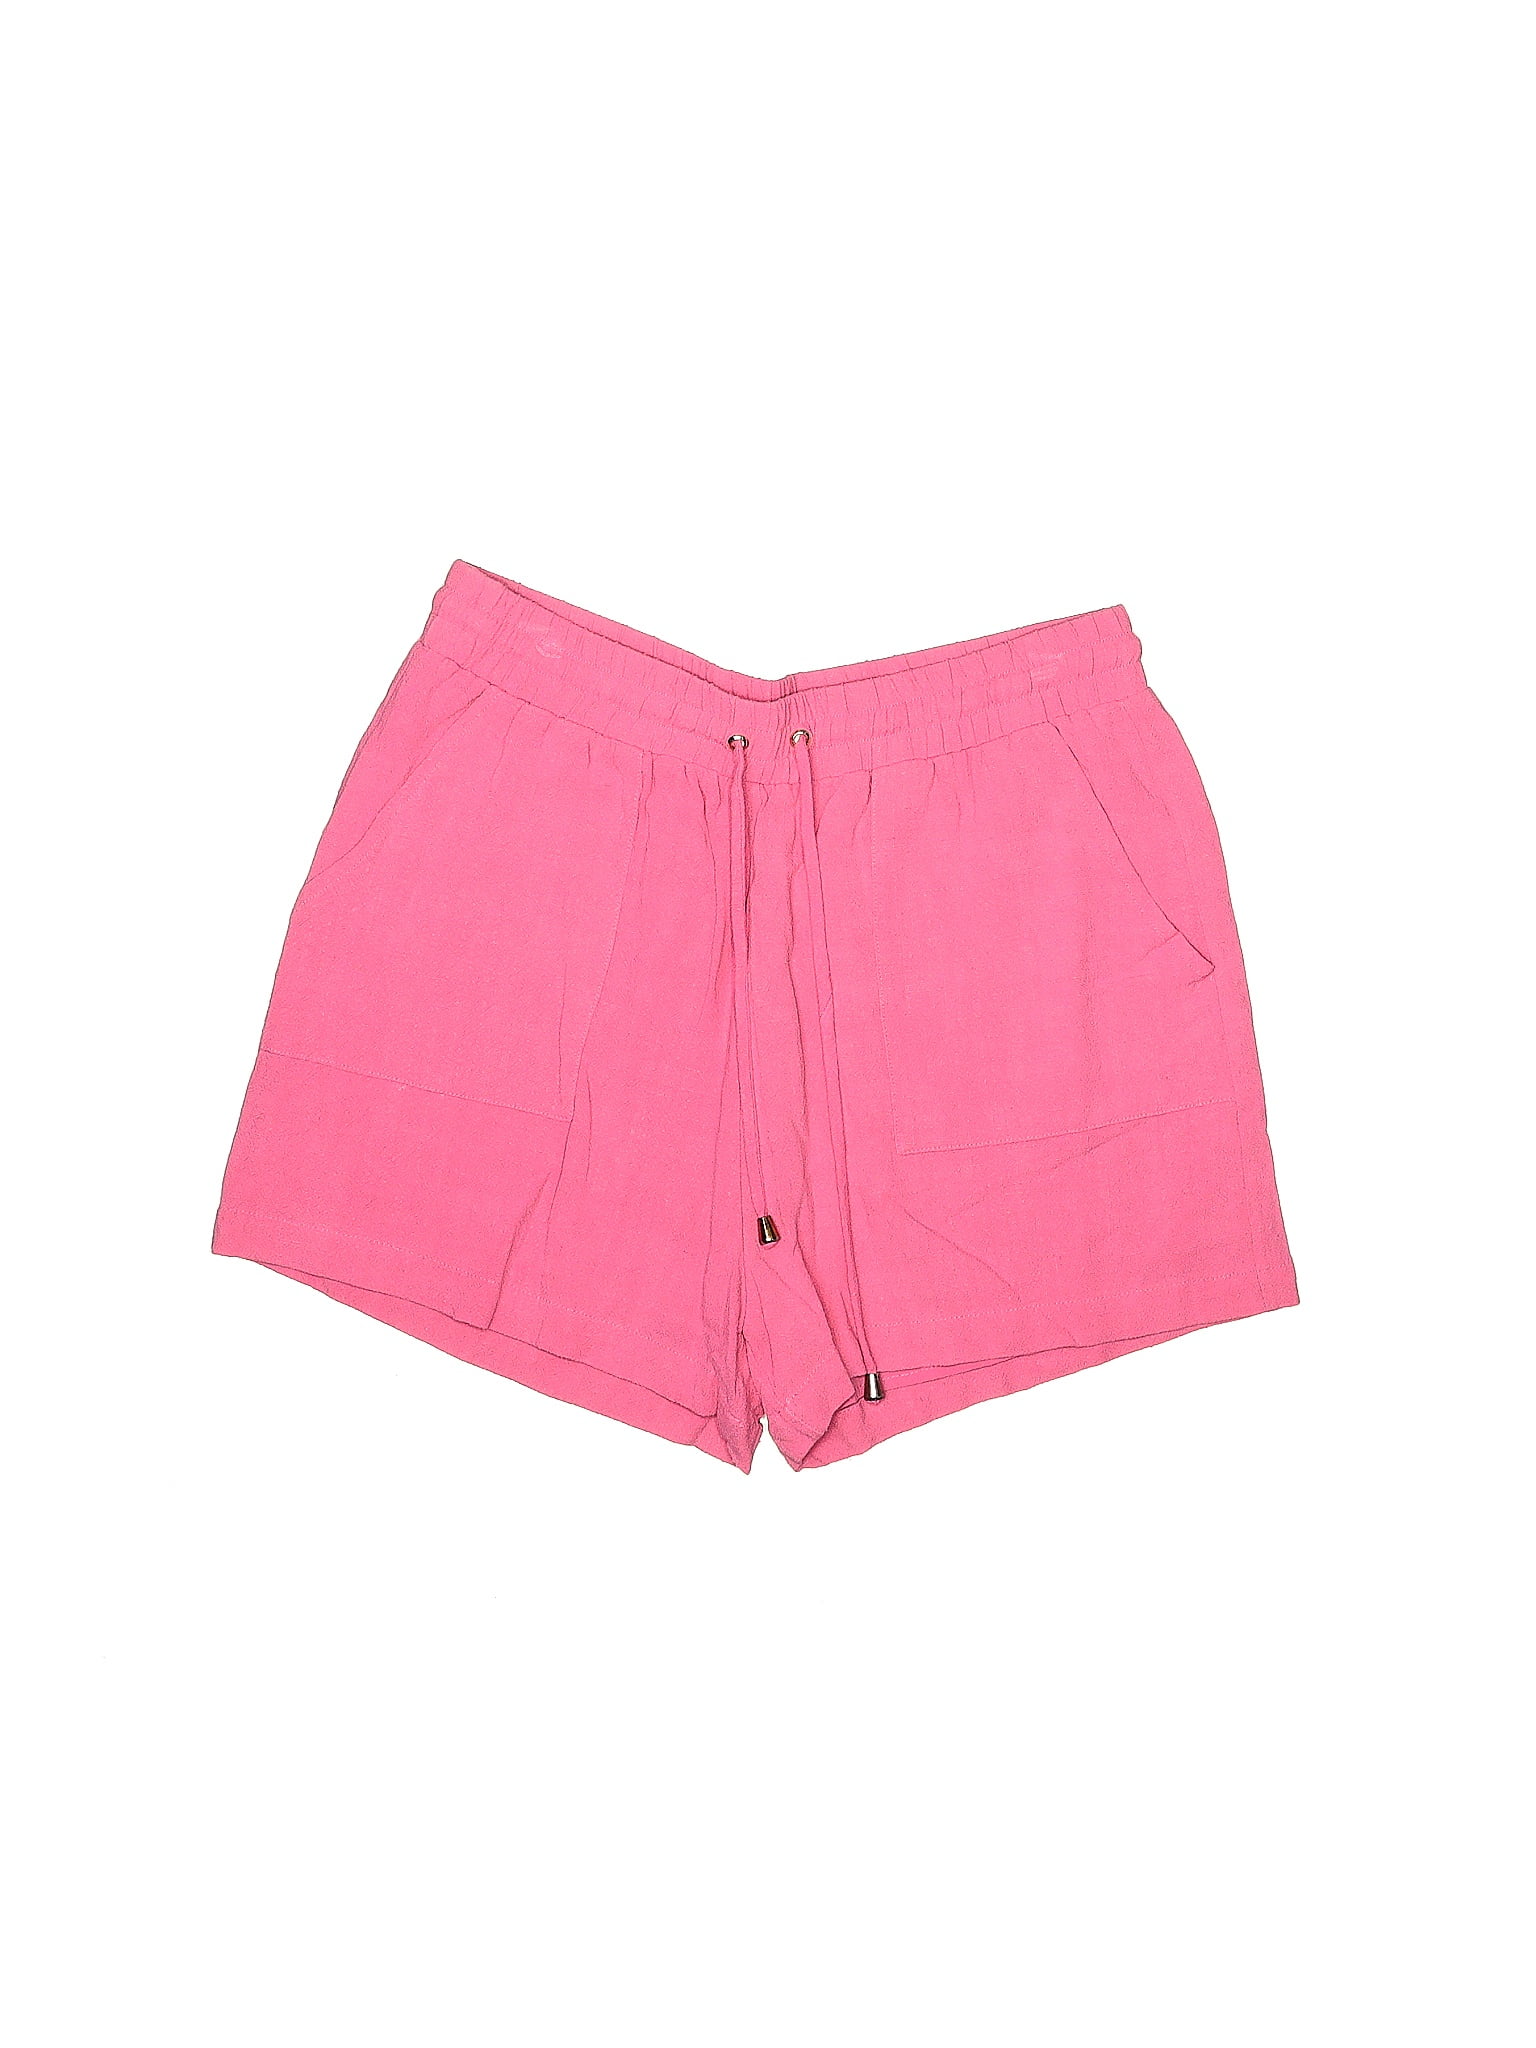 Allie Rose Solid Pink Shorts Size M - 65% off | ThredUp